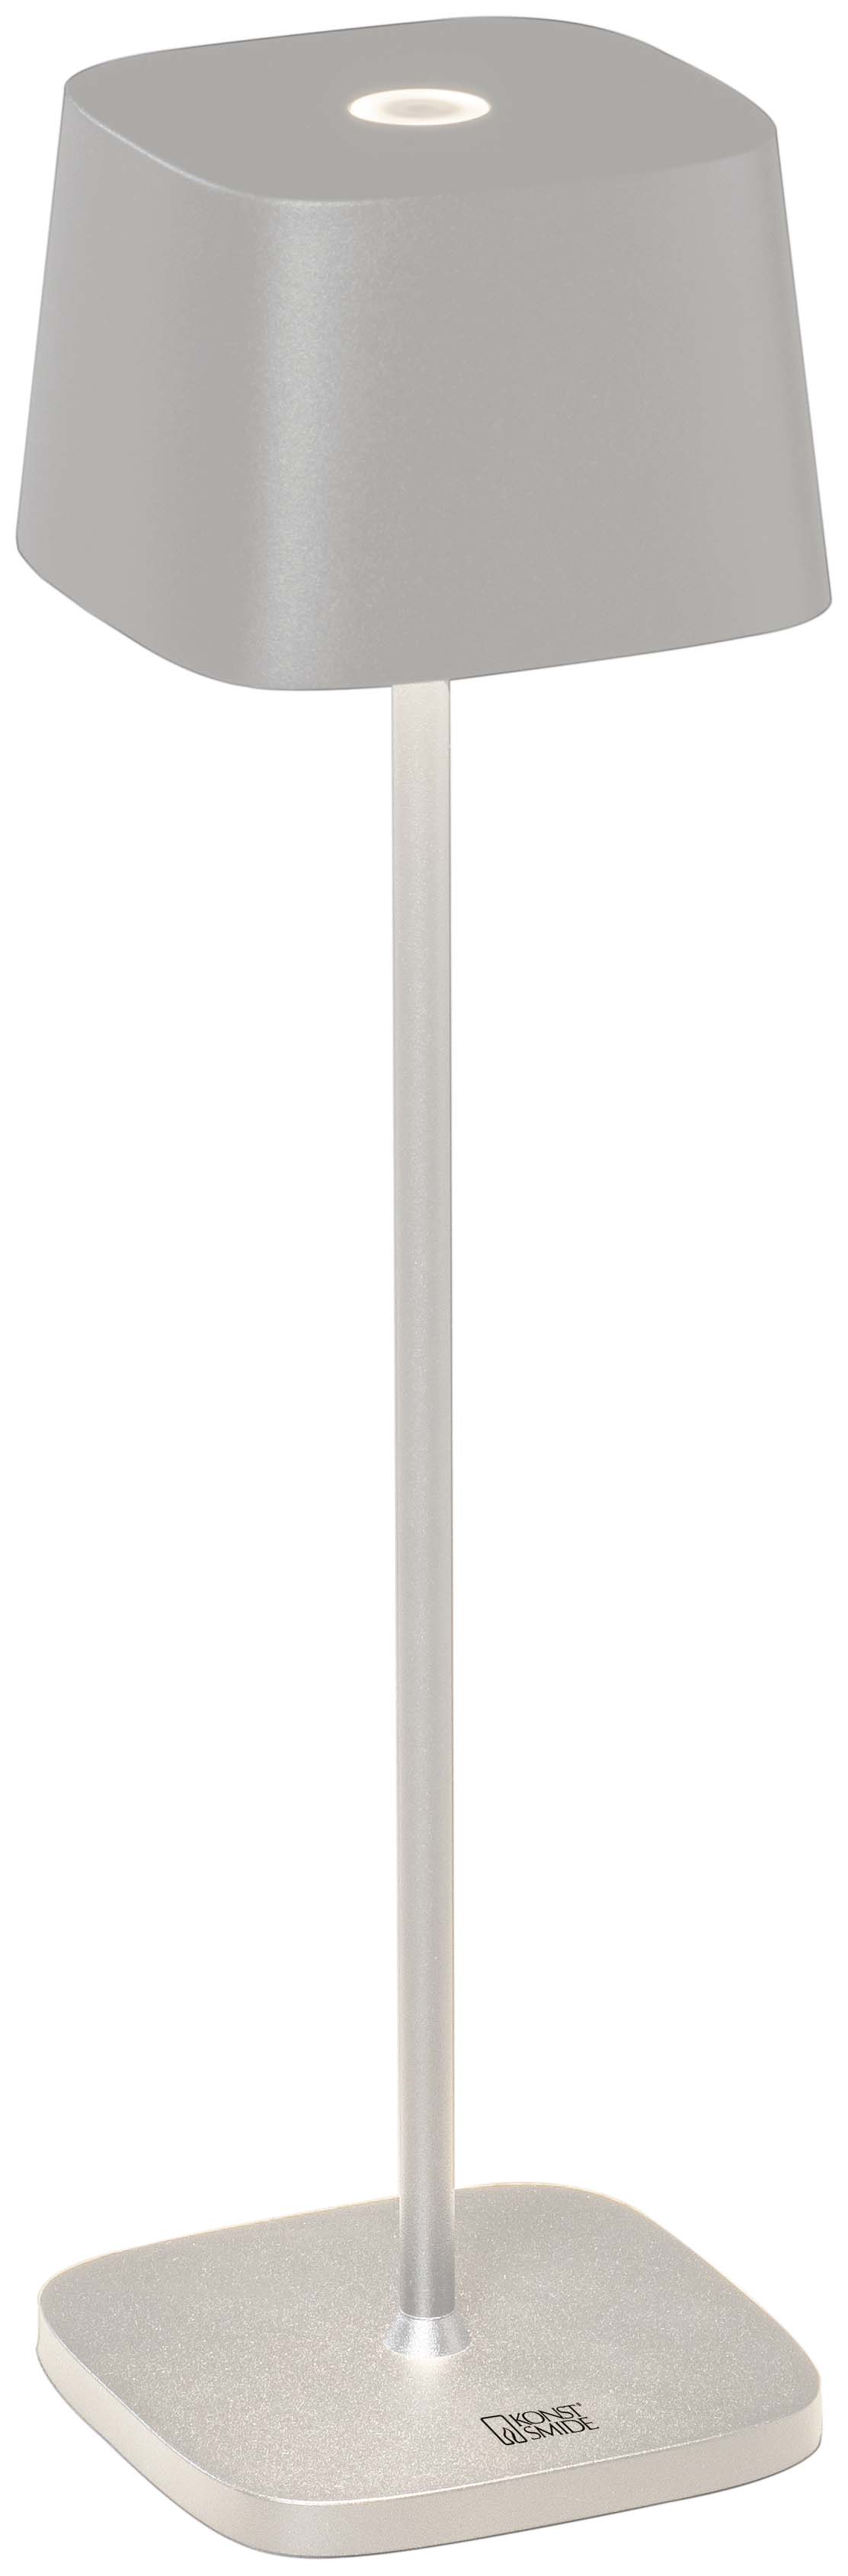 Capri blanc mat - Lampe d'extérieur LED - USB rechargeable - 36x10cm